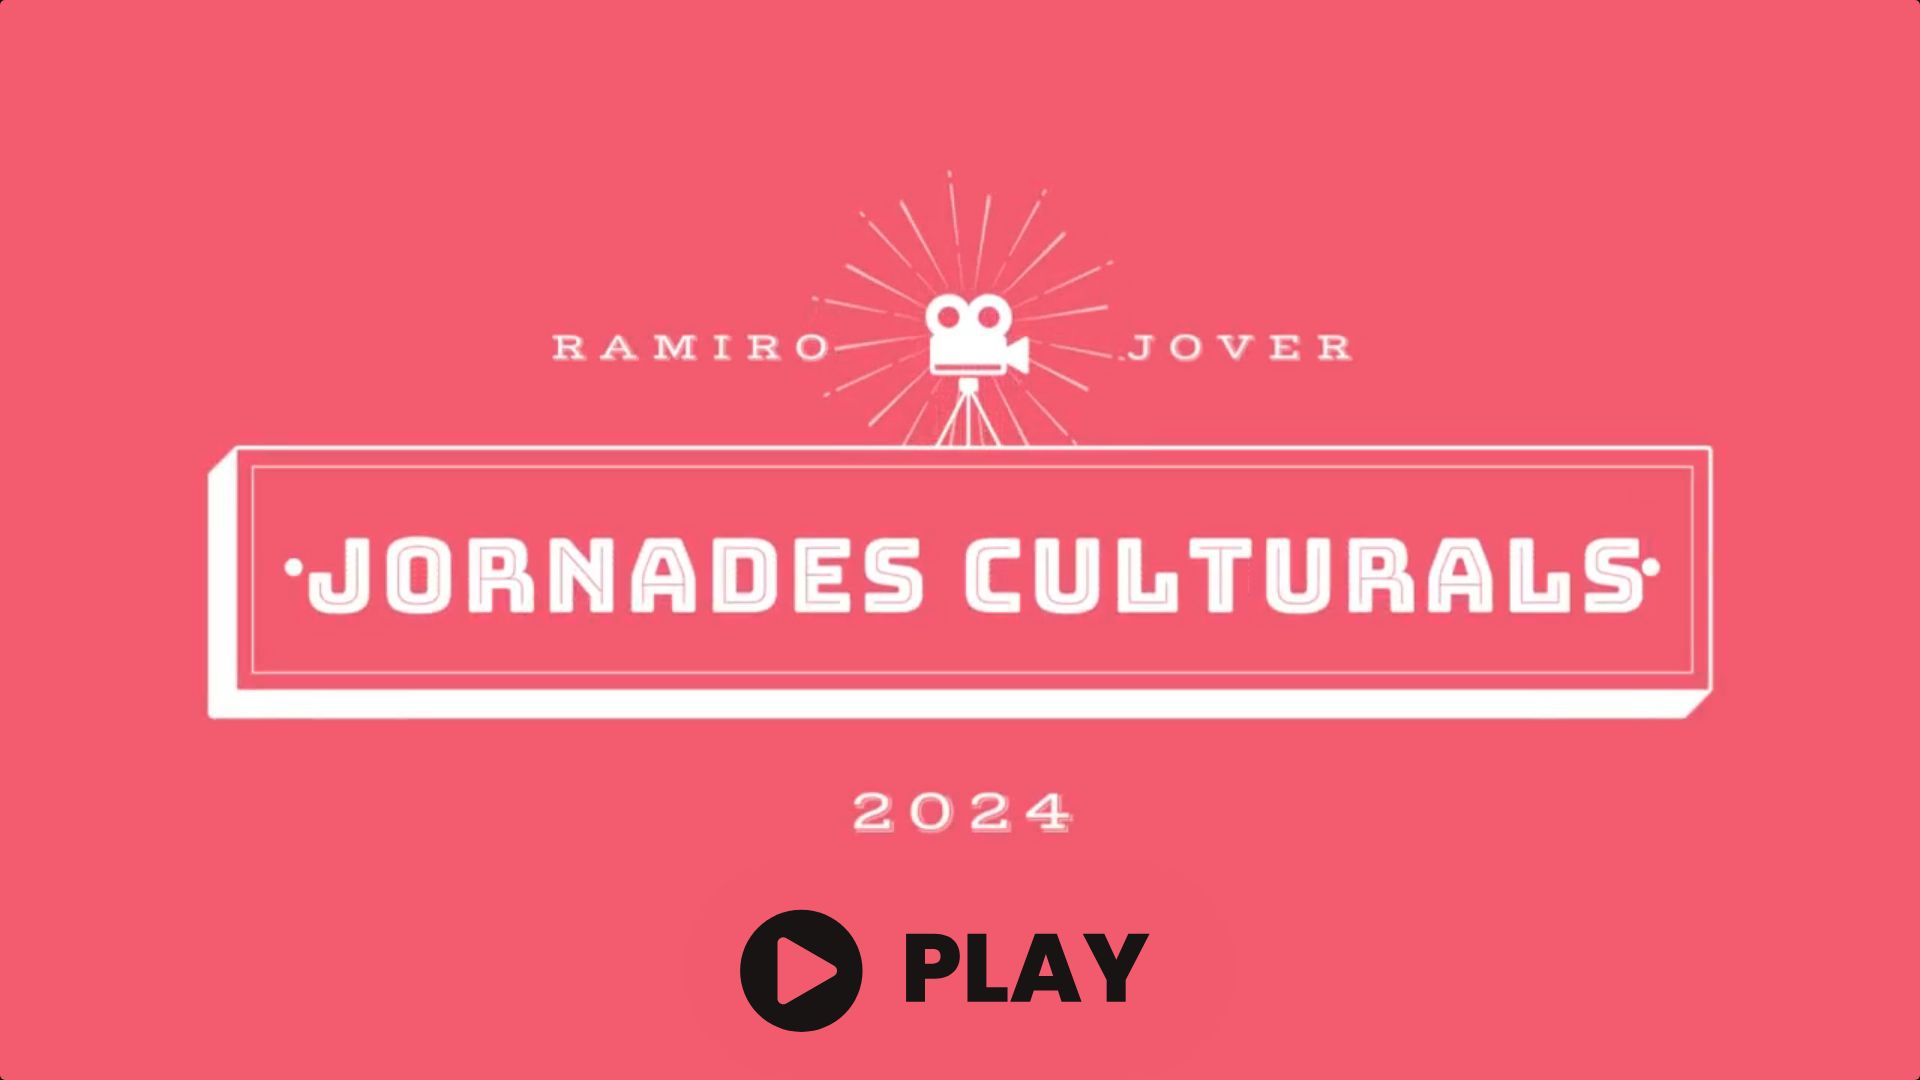 Jornades culturals 2024